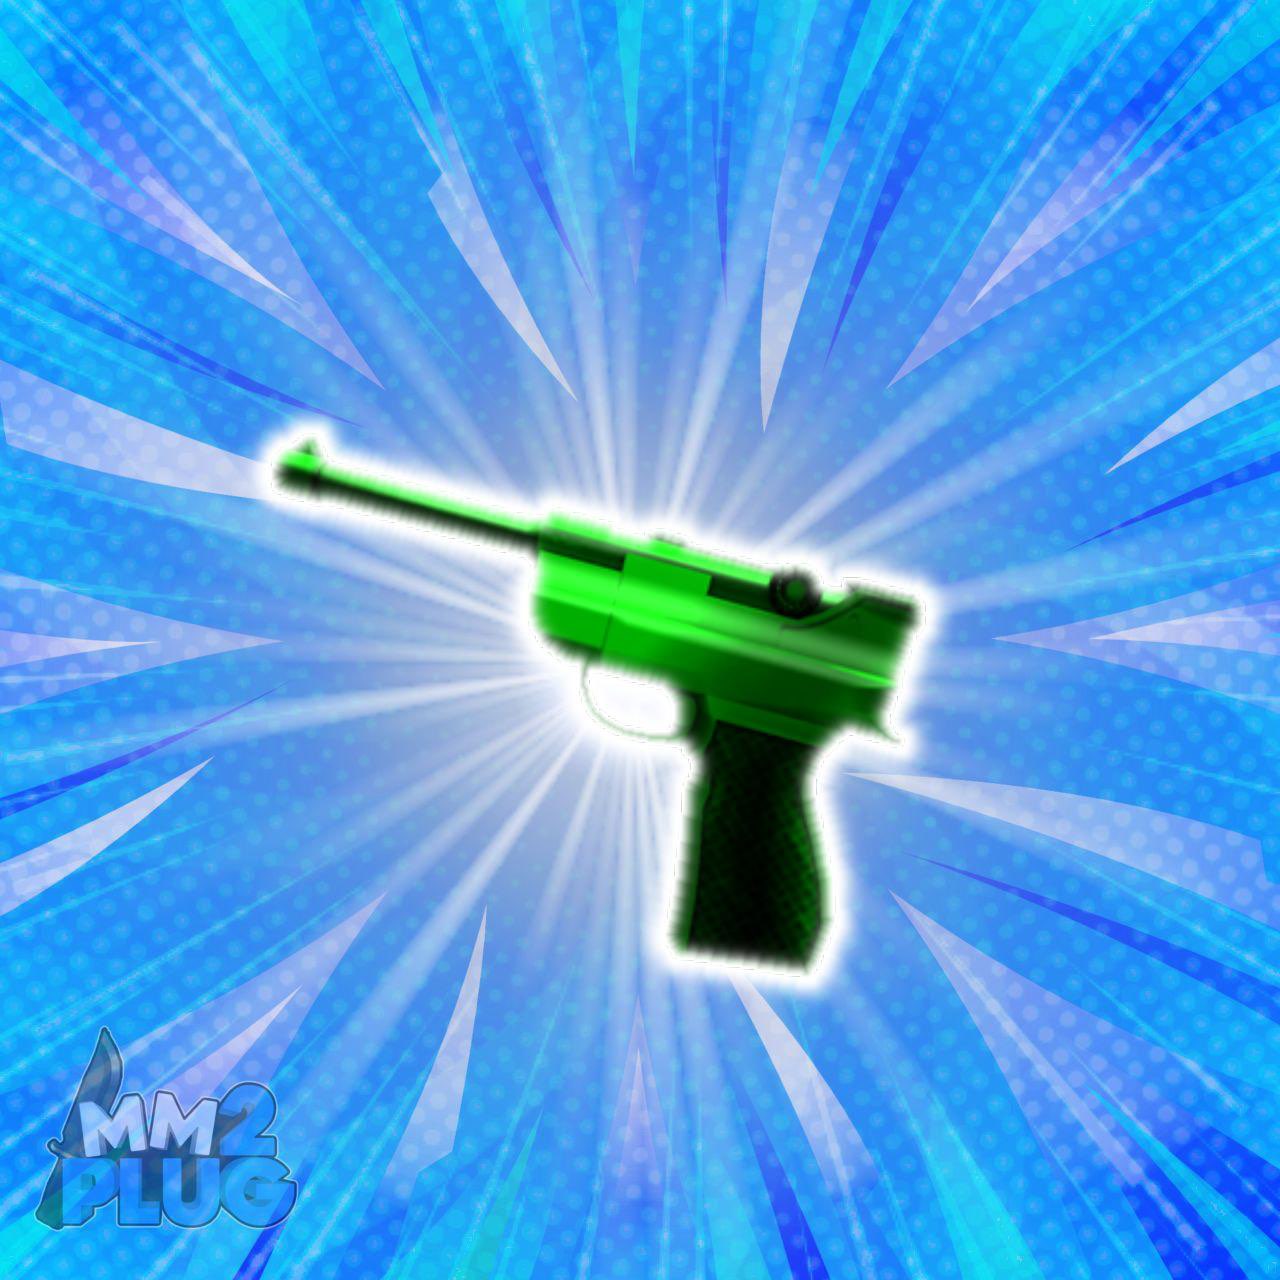 Green luger gun